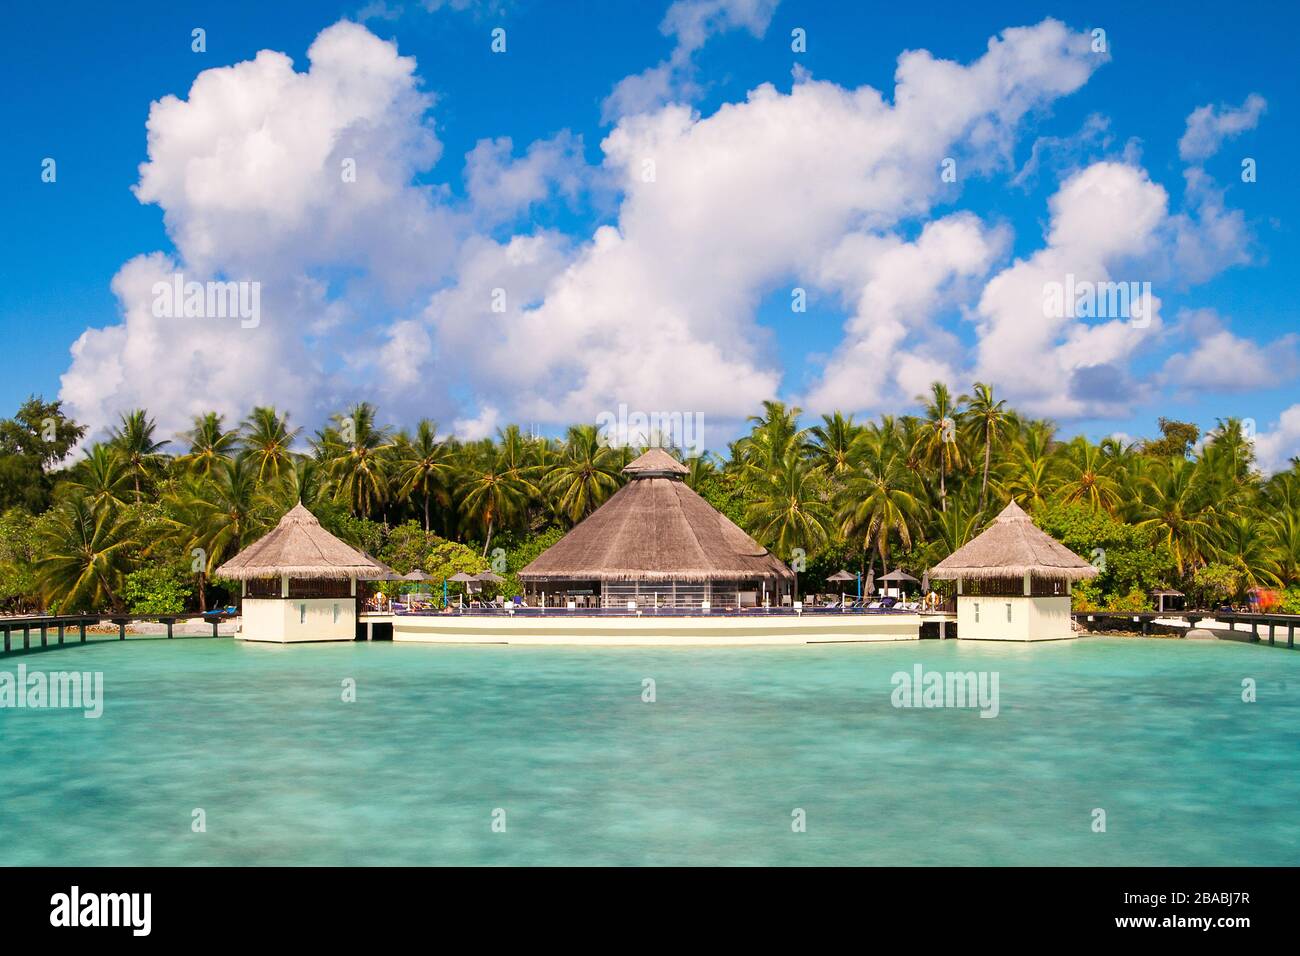 A view at the beach and waterhuts at tropical island, Maldives Stock Photo